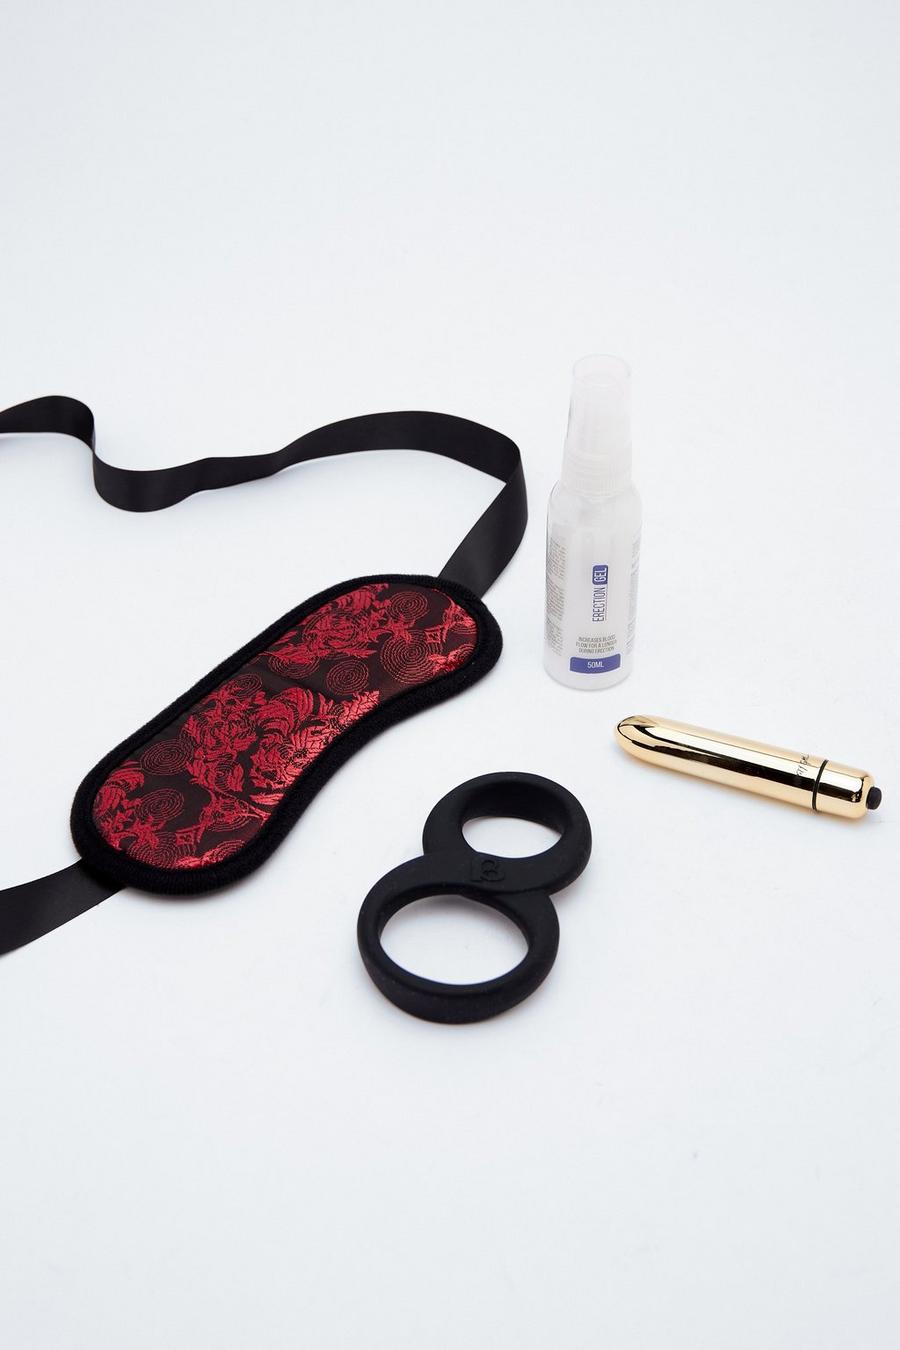 Kit Ten to Midnight avec vibrateur, anneau pénien, gel lubrifiant et masque